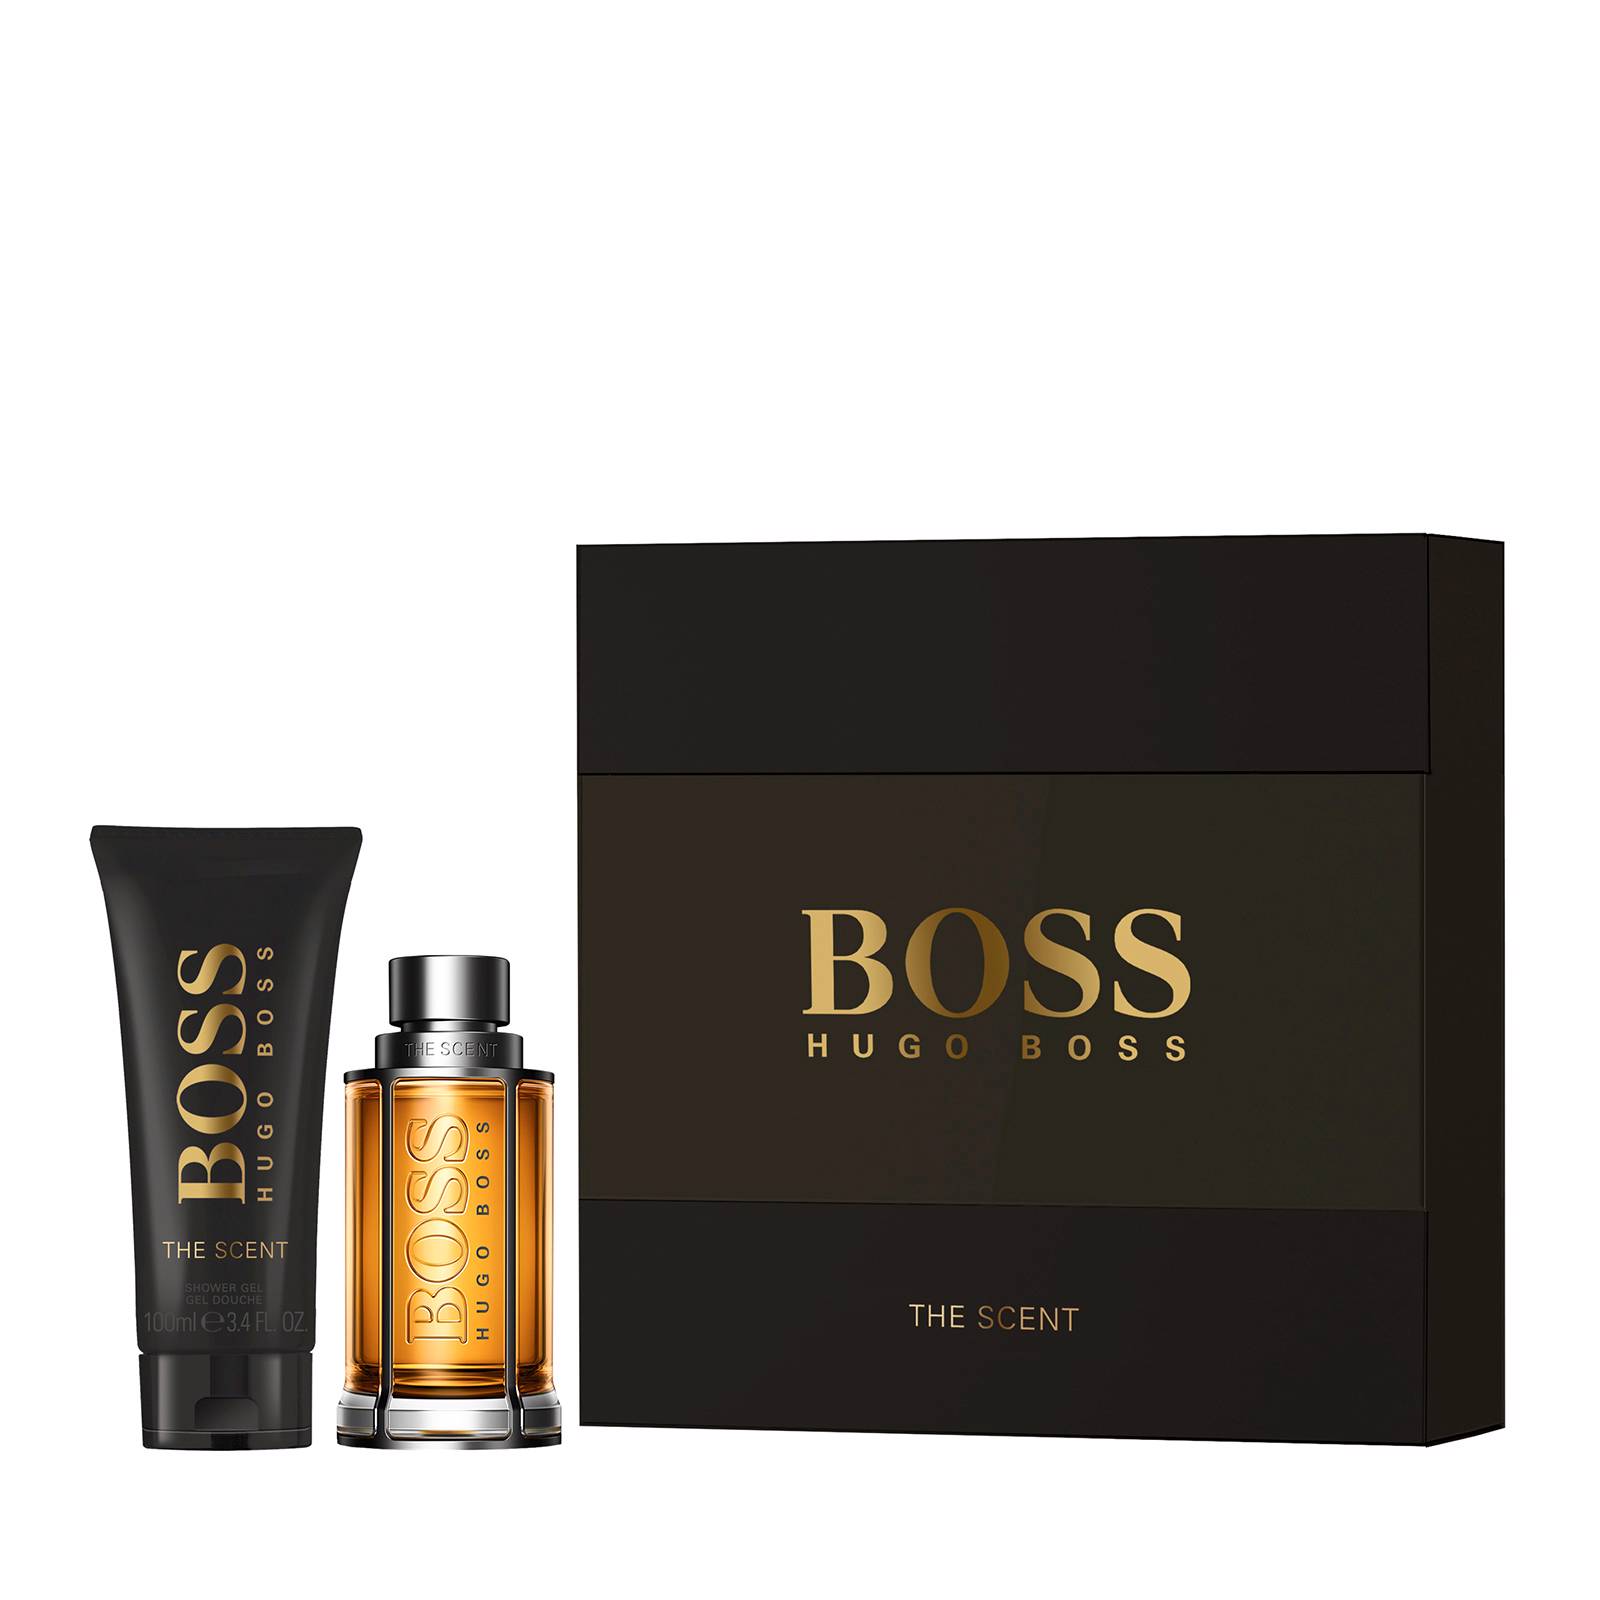 Buy Hugo Boss - The Scent EDT 50 ml + Shower Gel 100 ml - Giftset